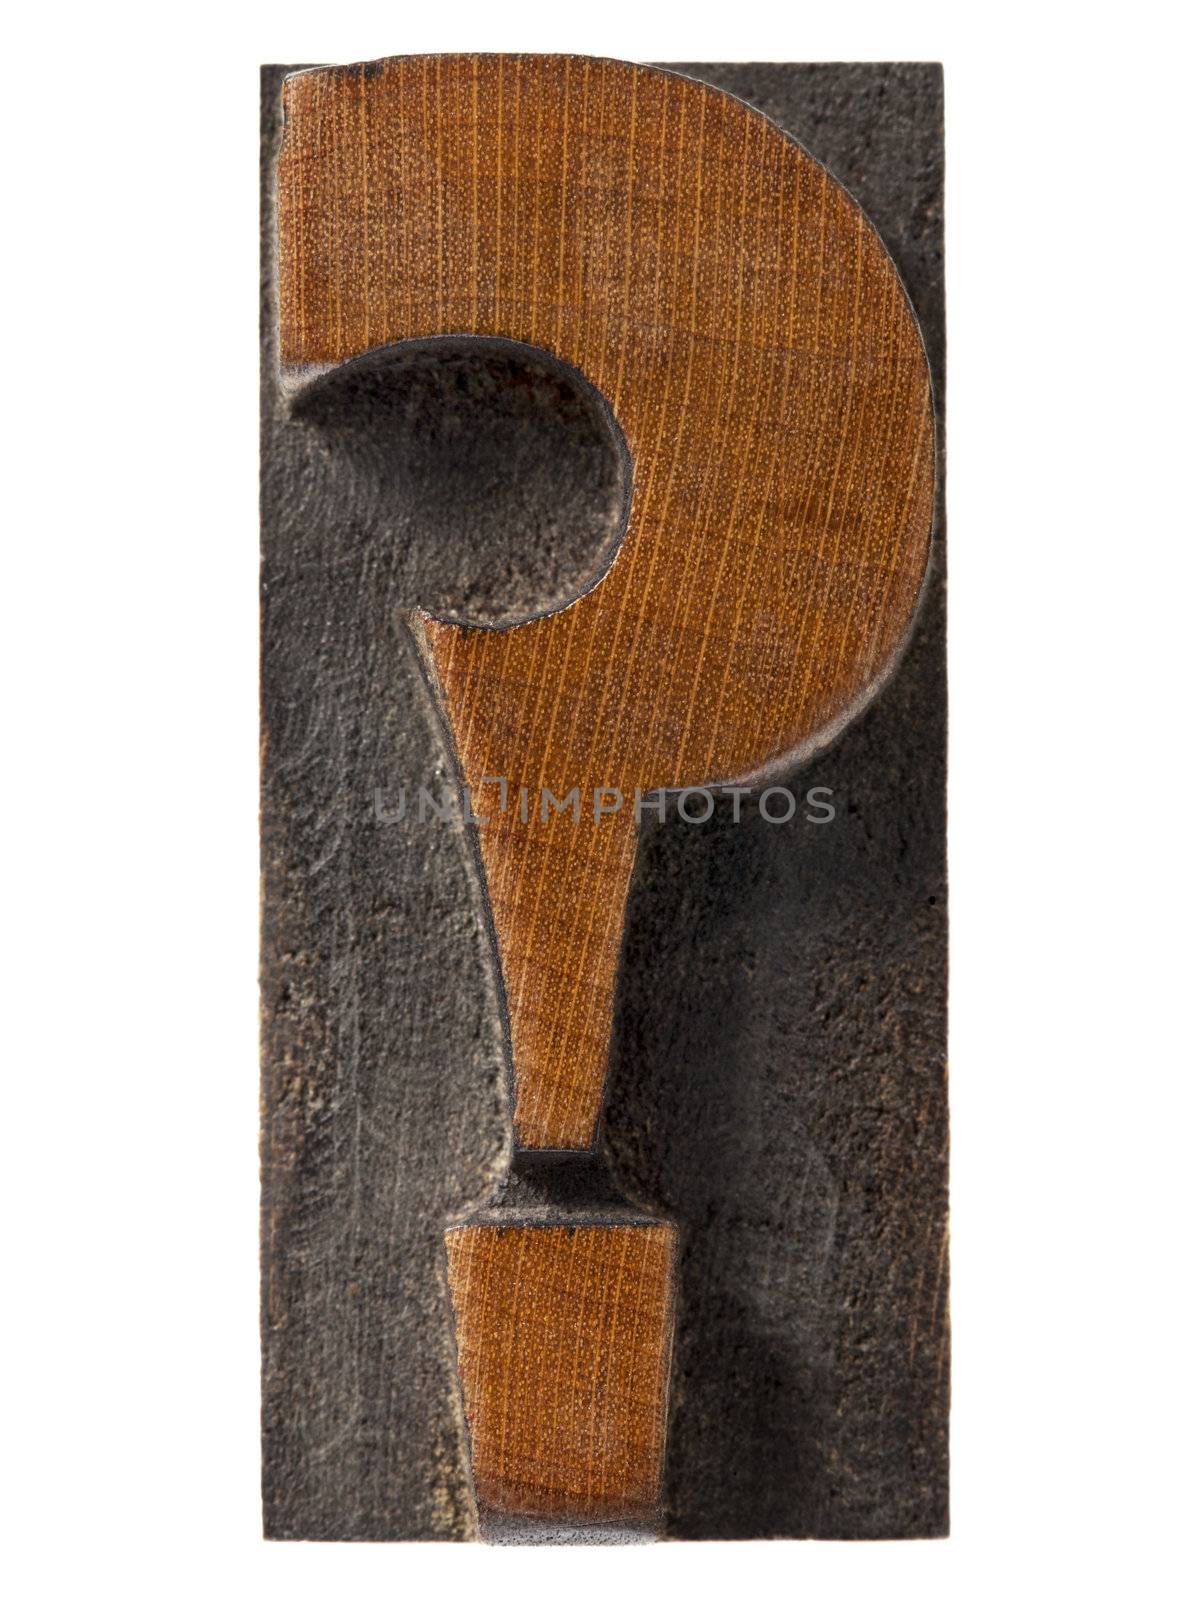 question mark in antique letterpress by PixelsAway